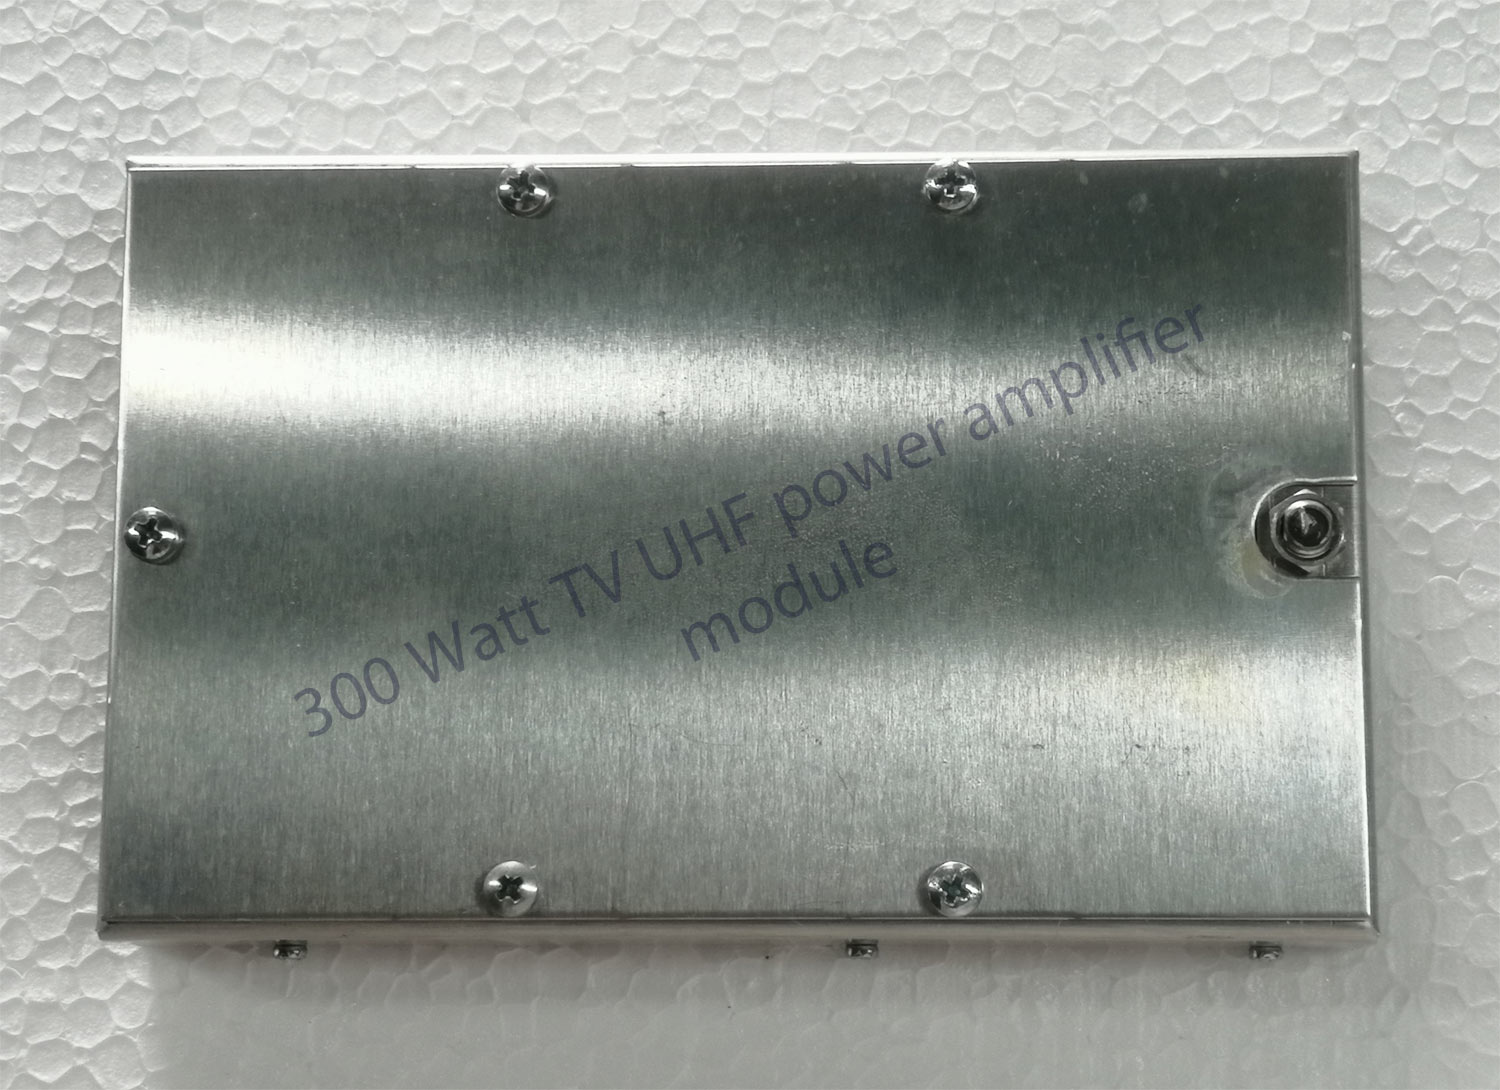 UHF 200watt power amplifier BLF861A